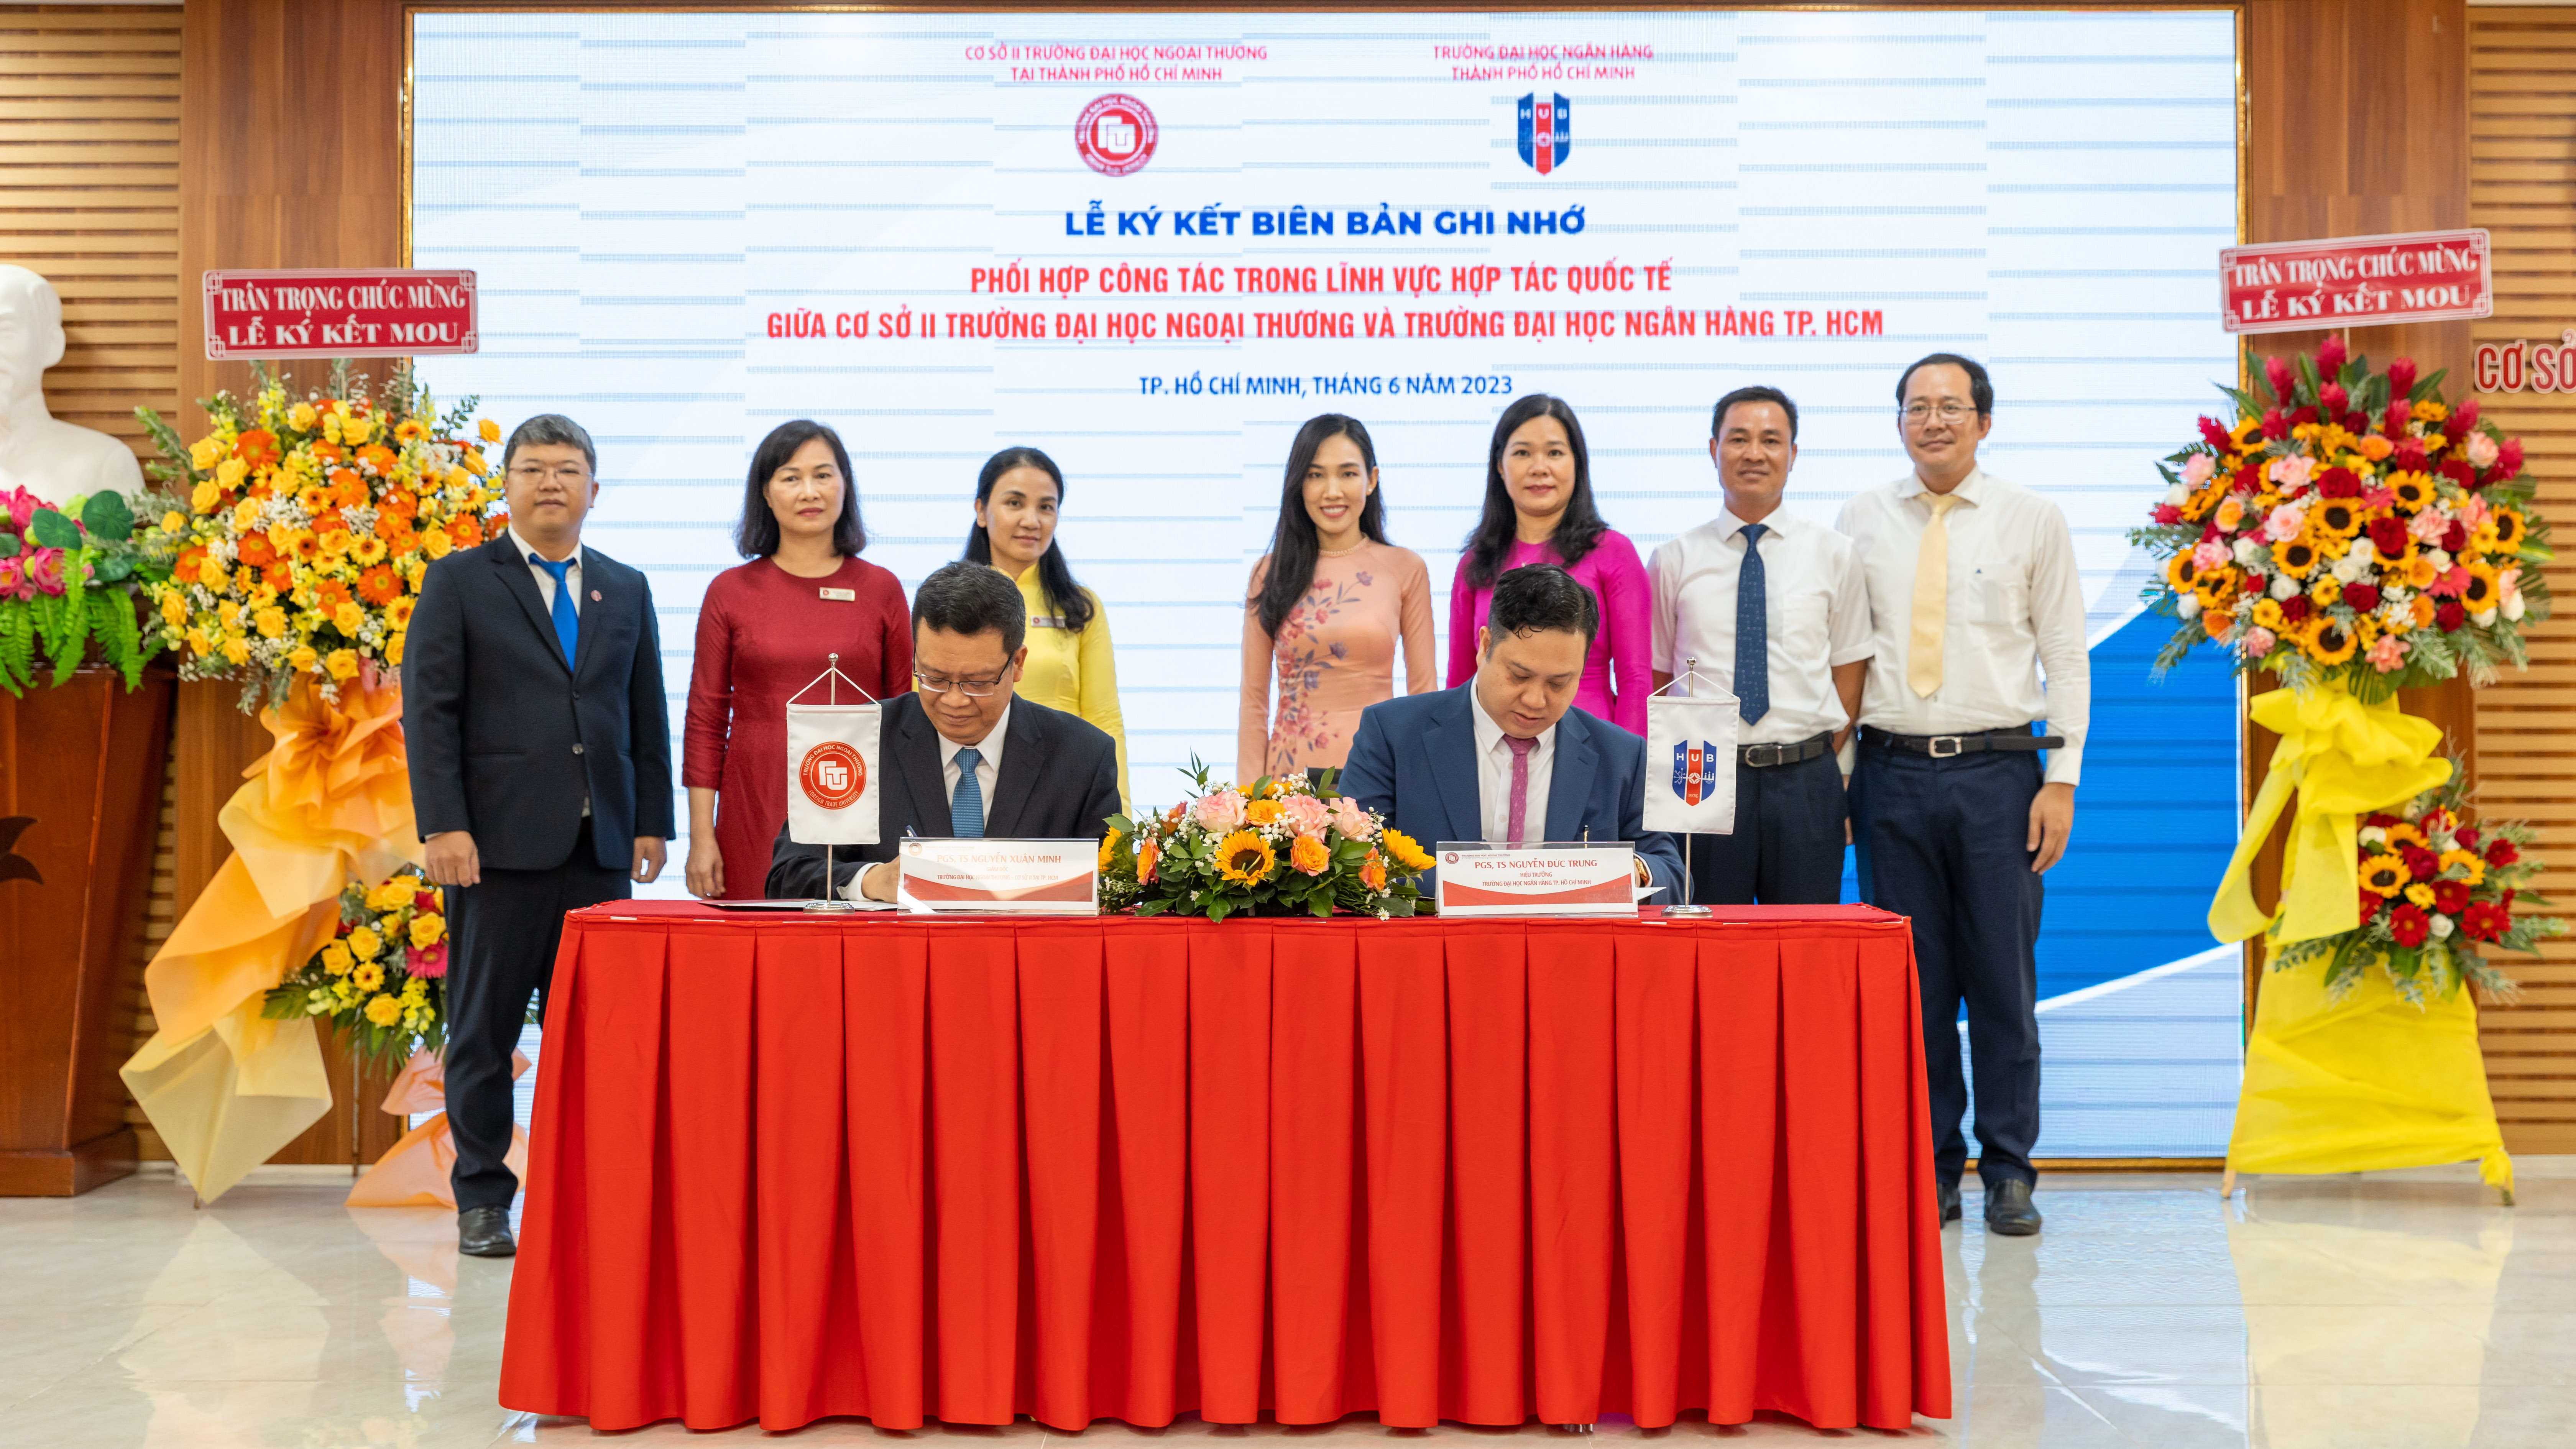 HUB ký kết Biên bản ghi nhớ phối hợp công tác trong lĩnh vực hợp tác quốc tế với Trường Đại học Ngoại thương Cơ sở II tại TP Hồ Chí Minh